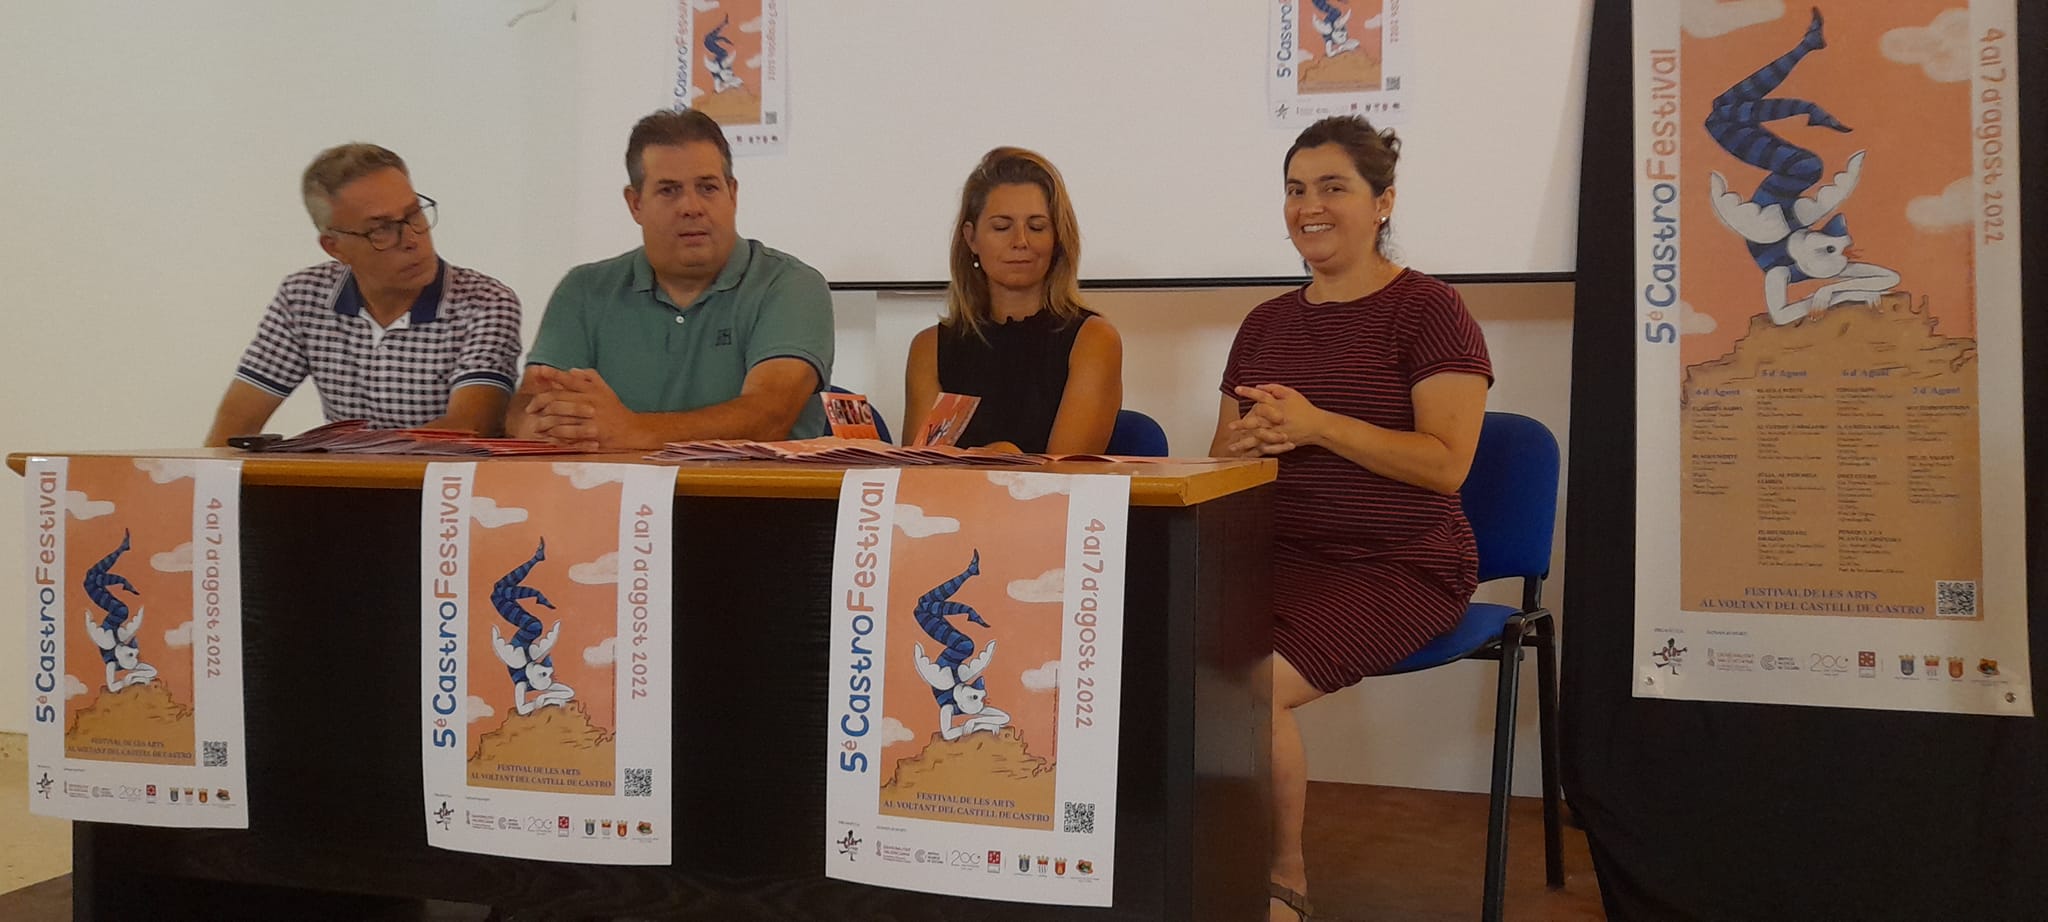 Castro Festival se expande en su quinta edición a Chóvar y Coves de Sant Josep de la Vall d´Uixó